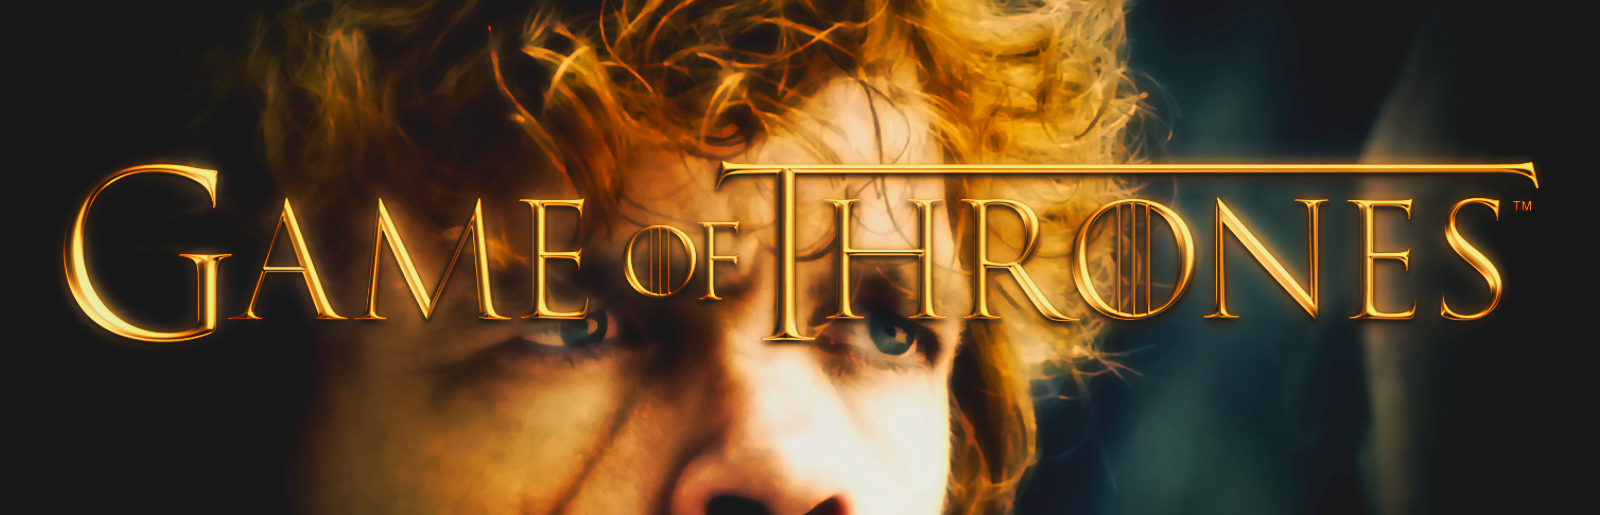 Game of Thrones: Podcast – Staffel 8, Episode 4: “Die letzten Starks”